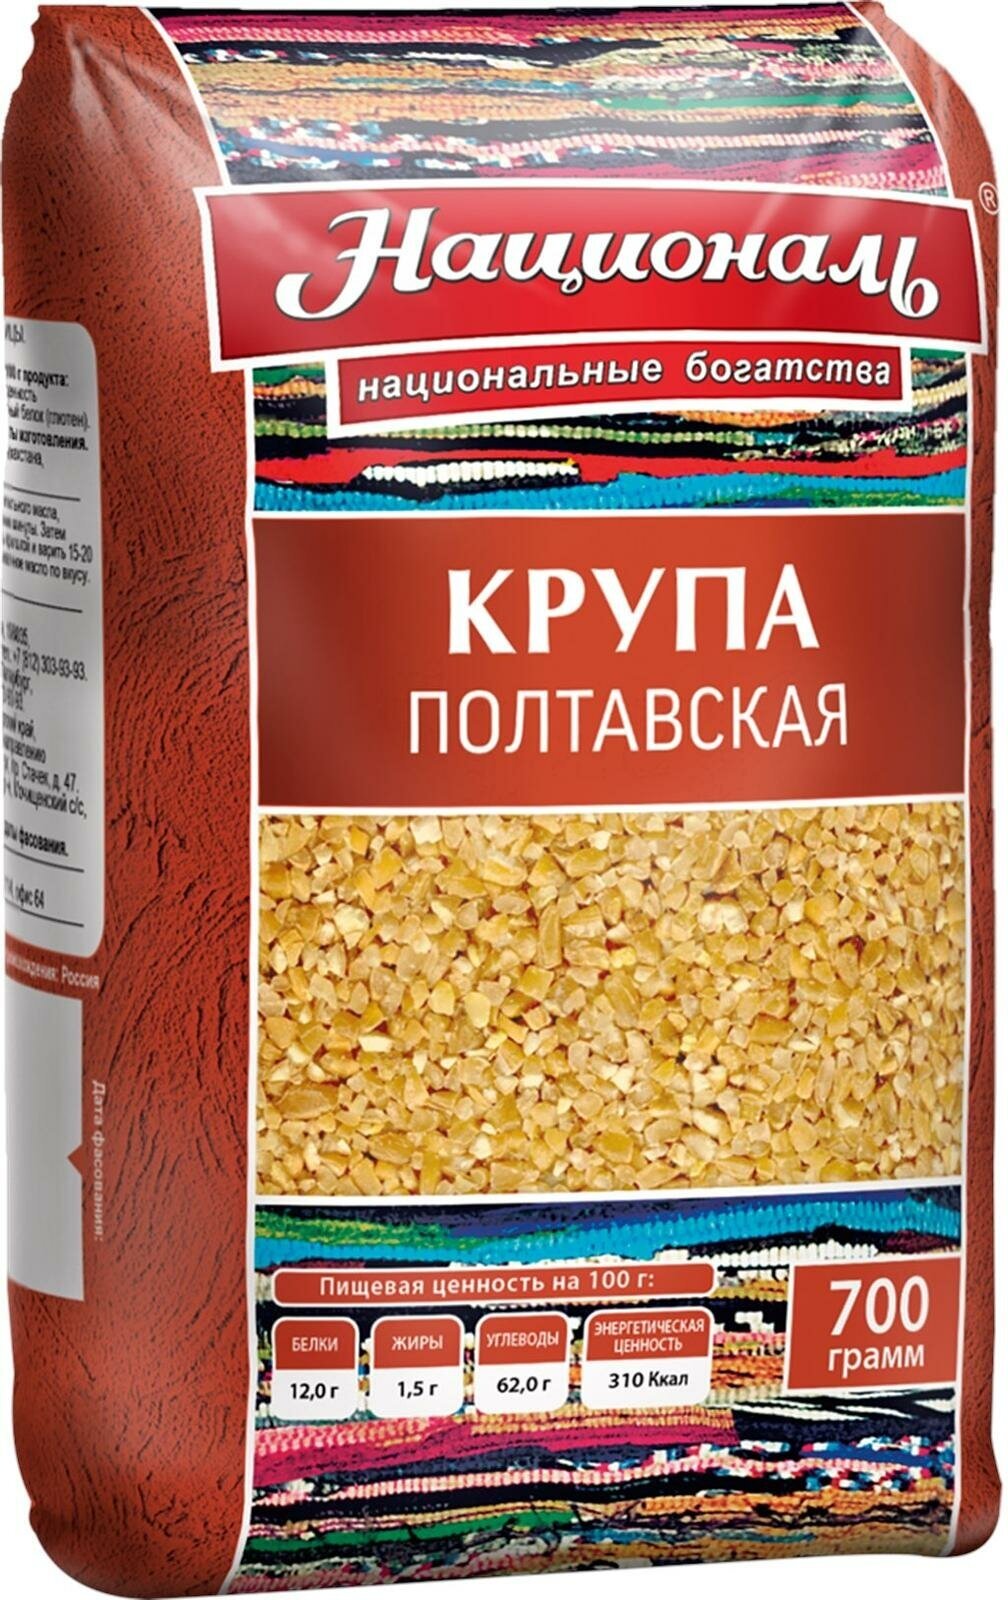 Пшеничная крупа Националь Полтавская 700г